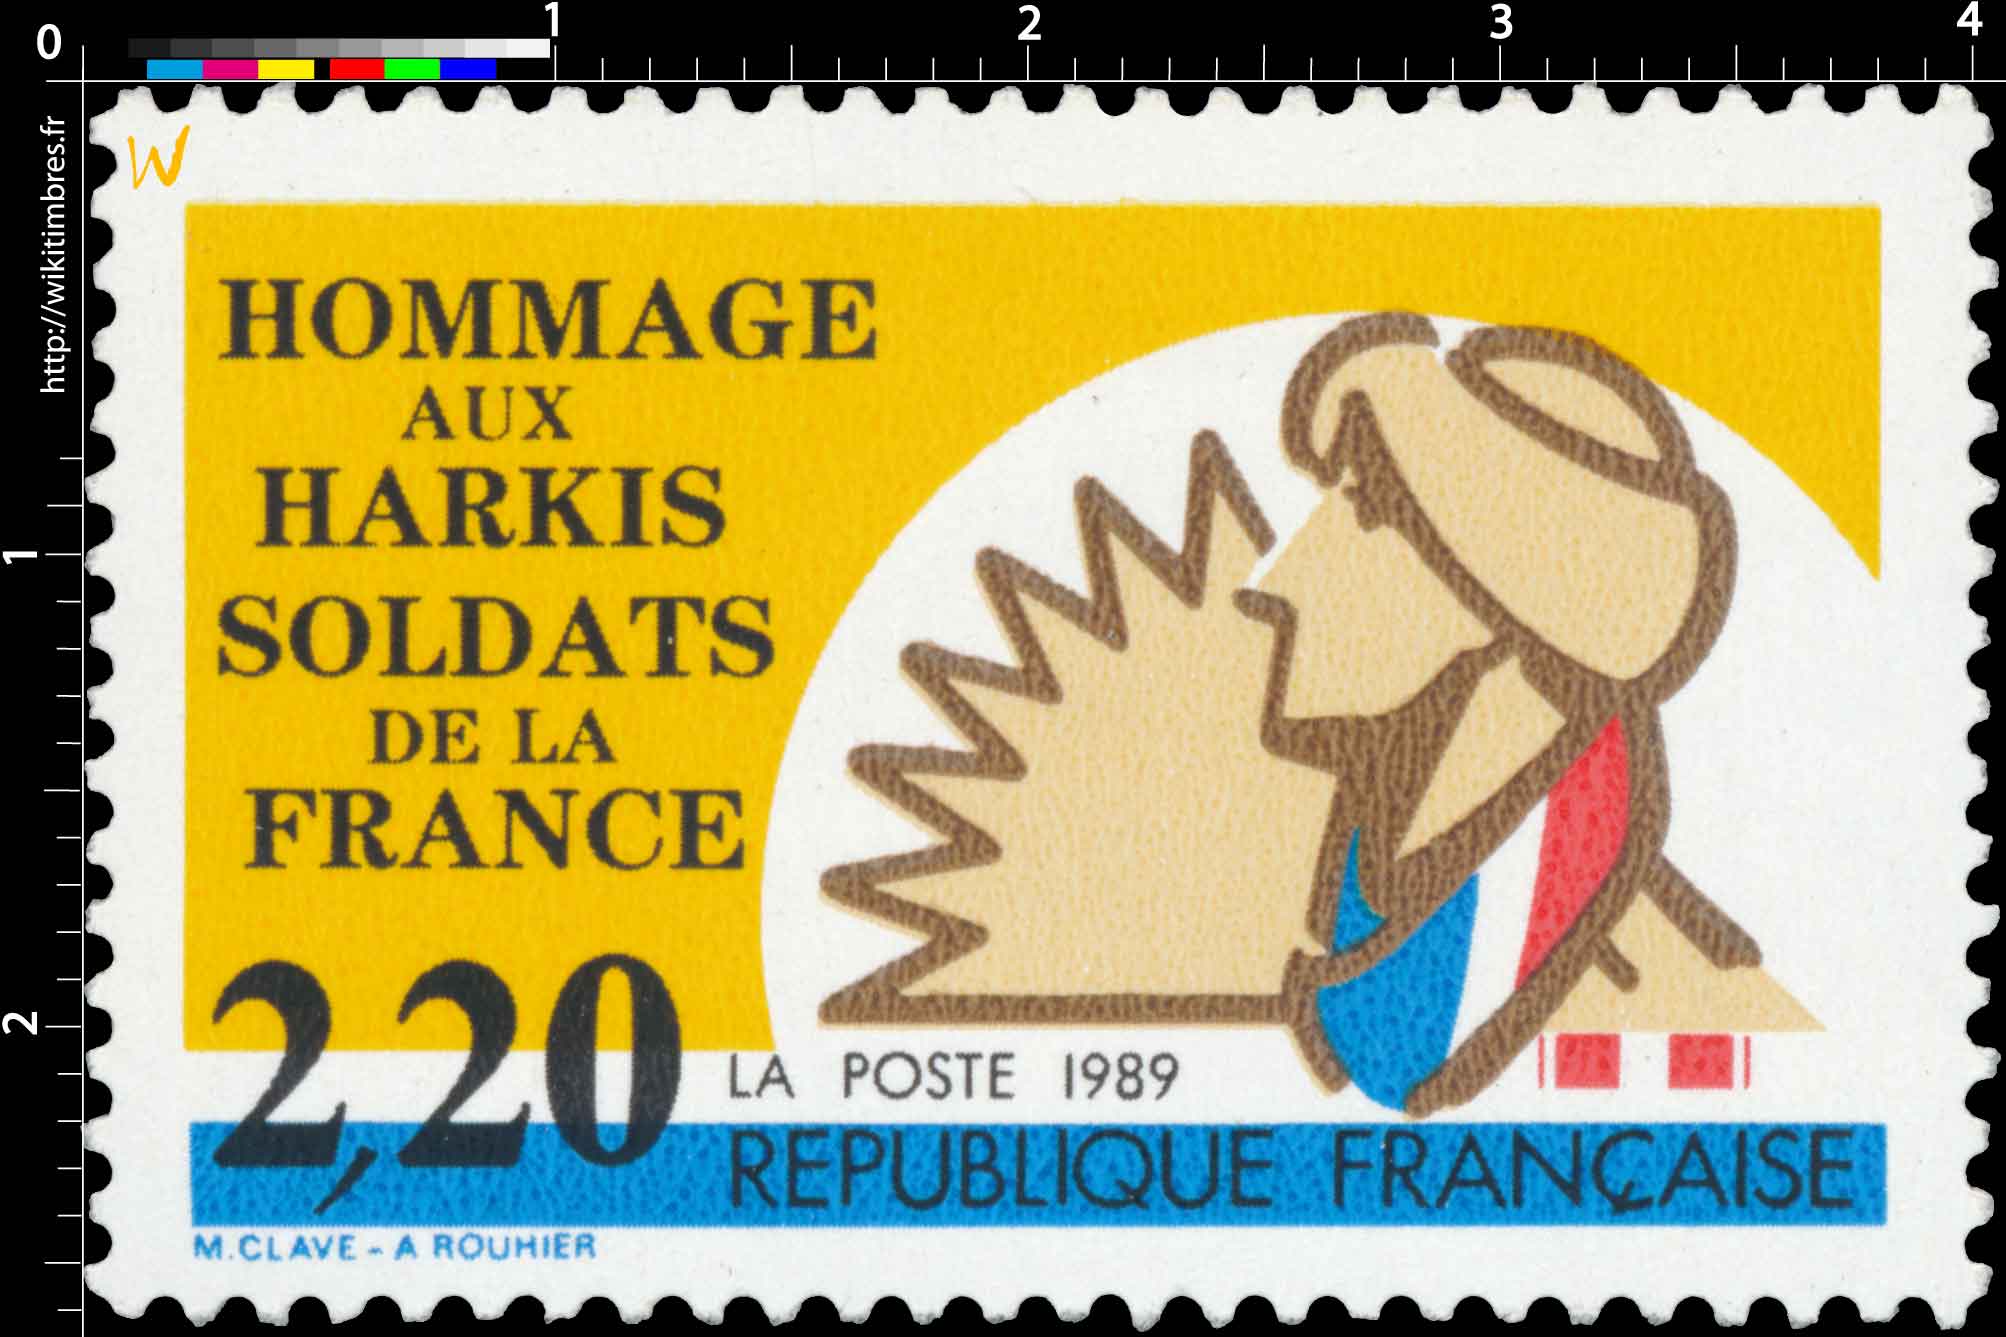 1989 HOMMAGE AUX HARKIS SOLDATS DE LA FRANCE